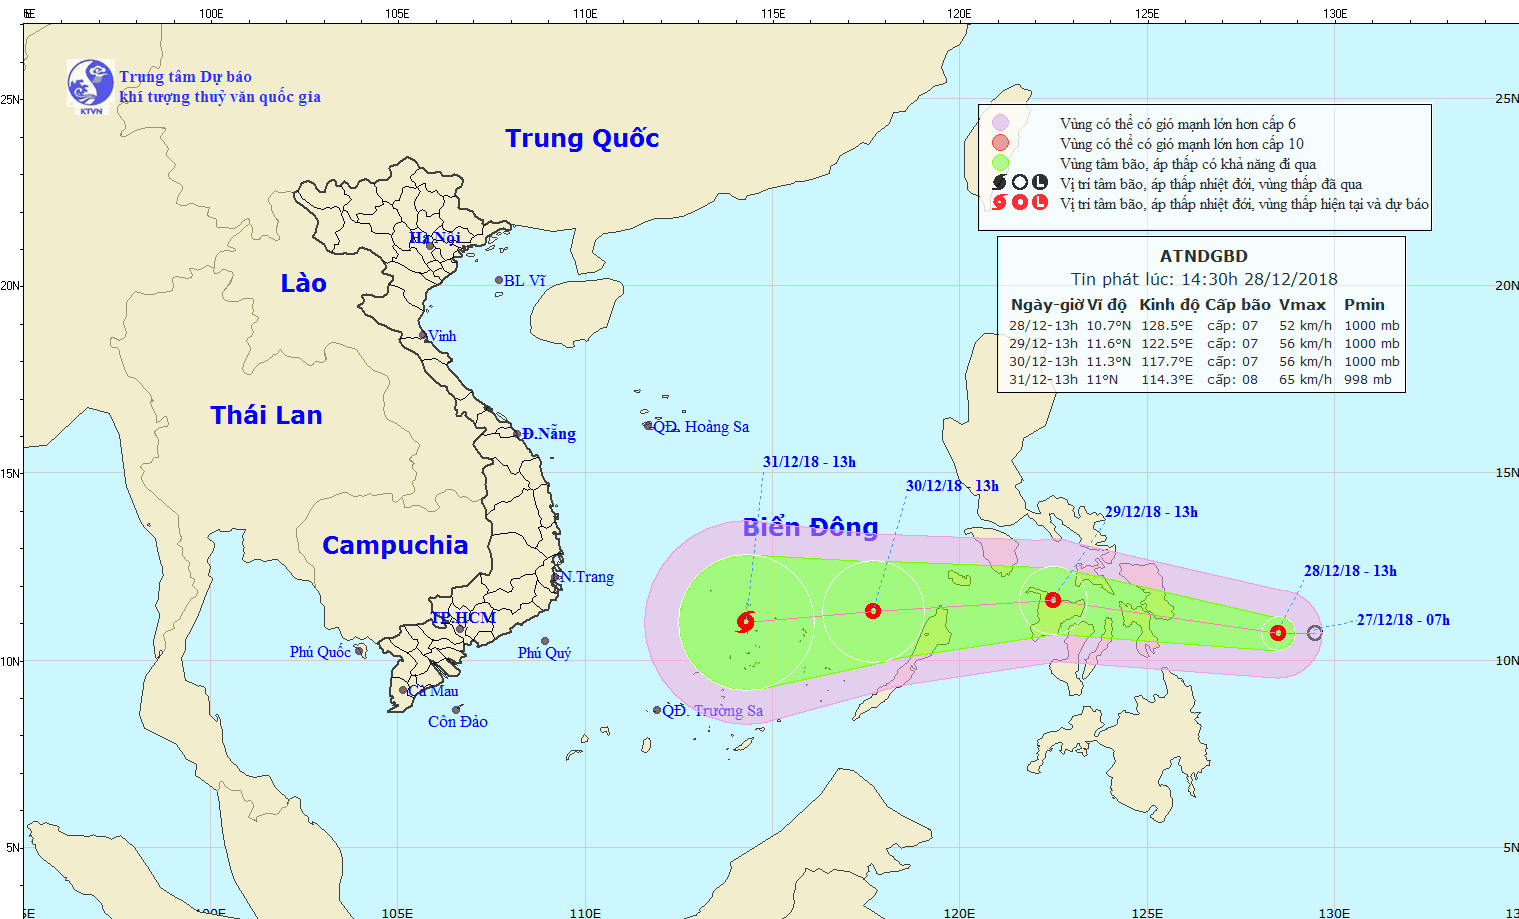 Áp thấp nhiệt đới ở khu vực giữa Biển Đông có khả năng mạnh lên thành bão từ đêm 29/12